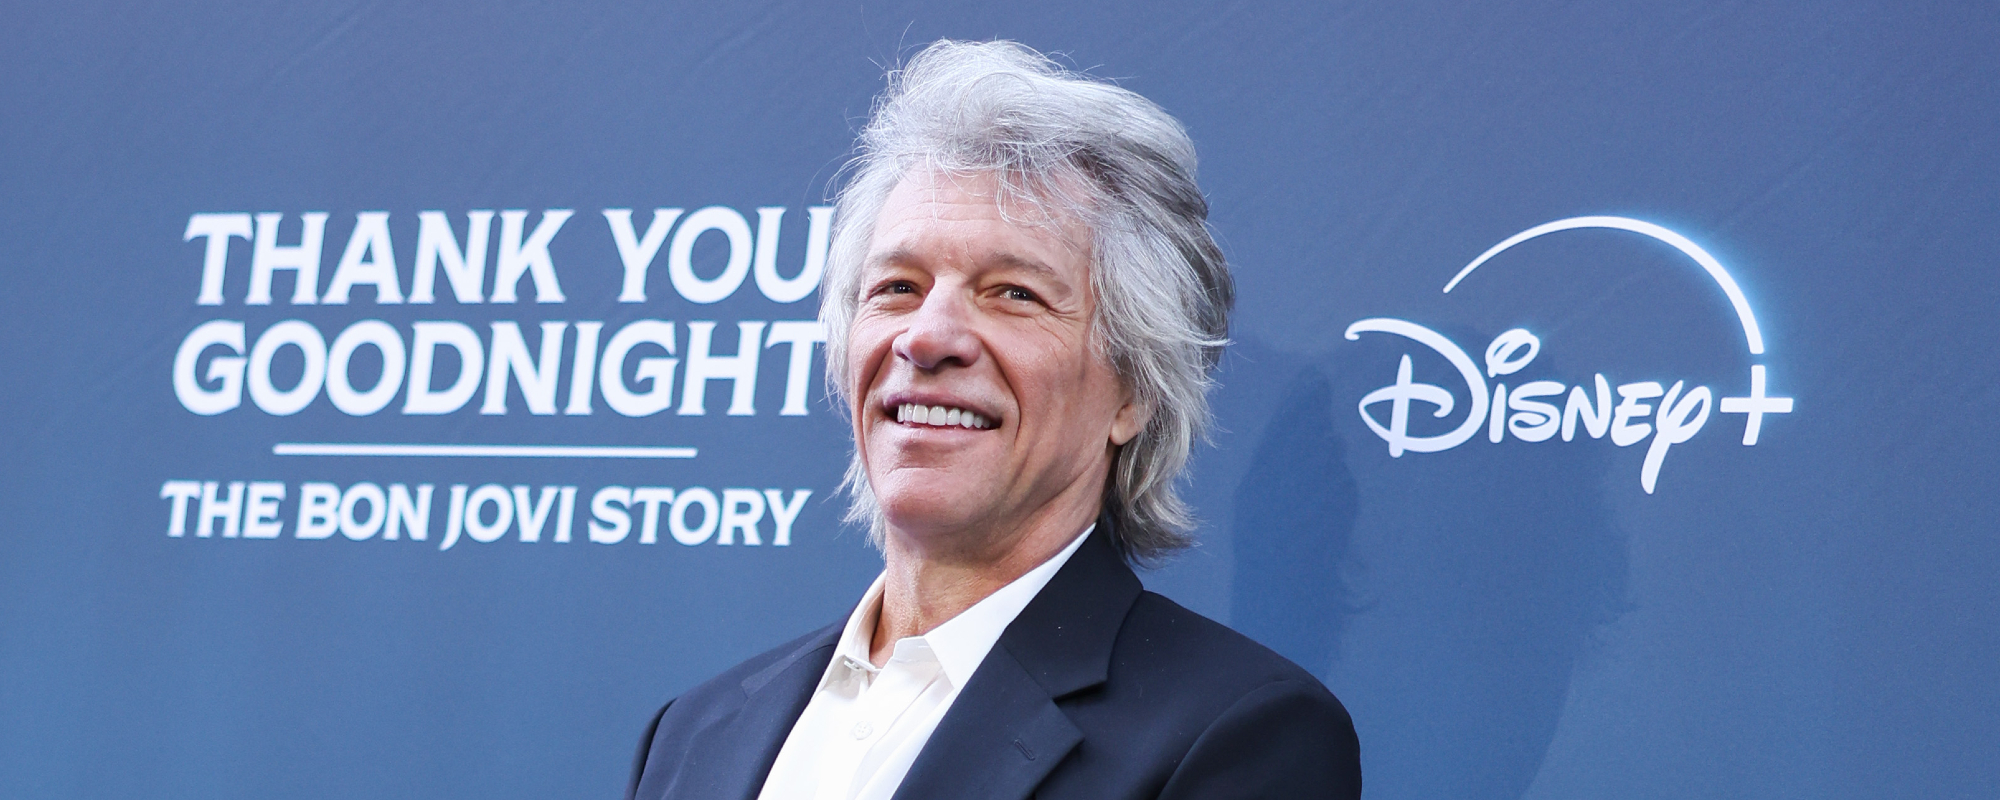 Jon Bon Jovi Admits He Wasn’t a Fan of “Livin’ on a Prayer” When First Written